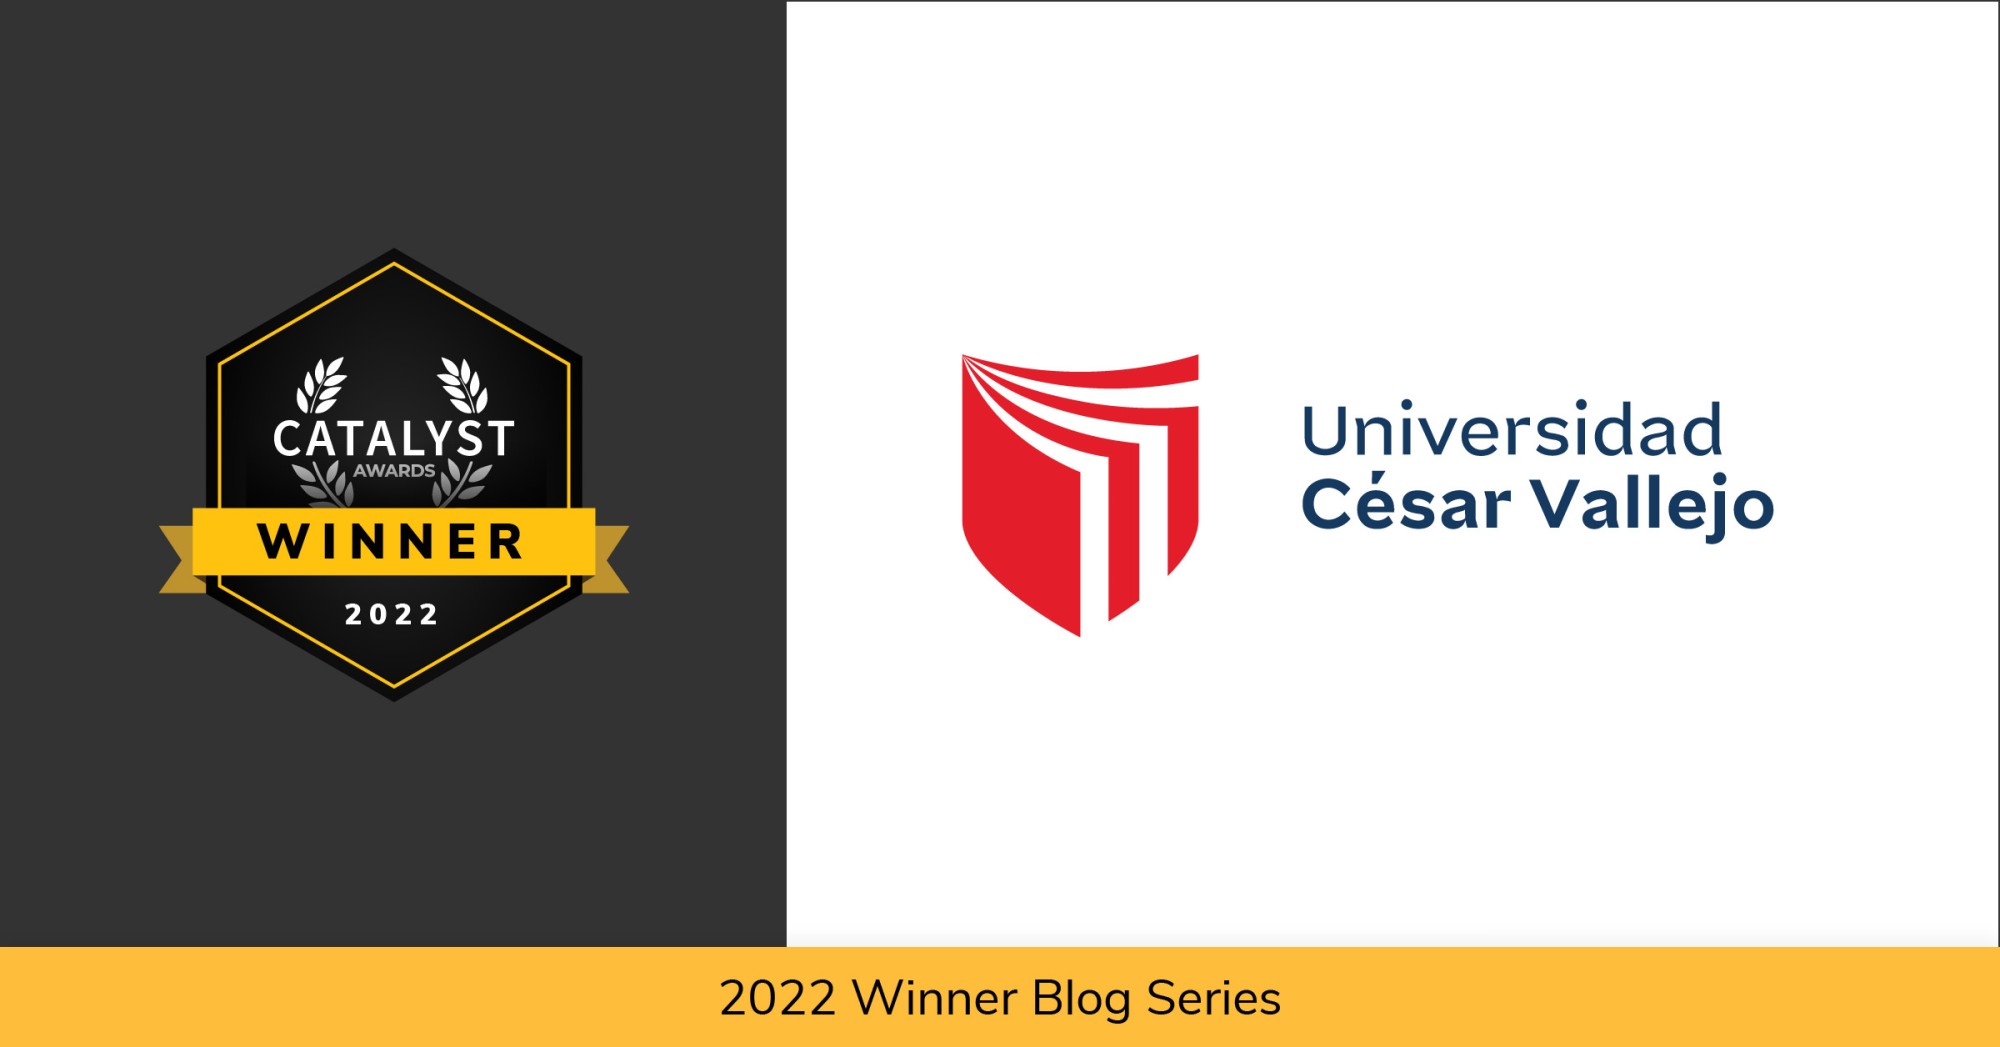 Catalyst Award Winner logo locked up with the Universidad Cesar Vallejo logo over the text 2022 Winner Blog Series